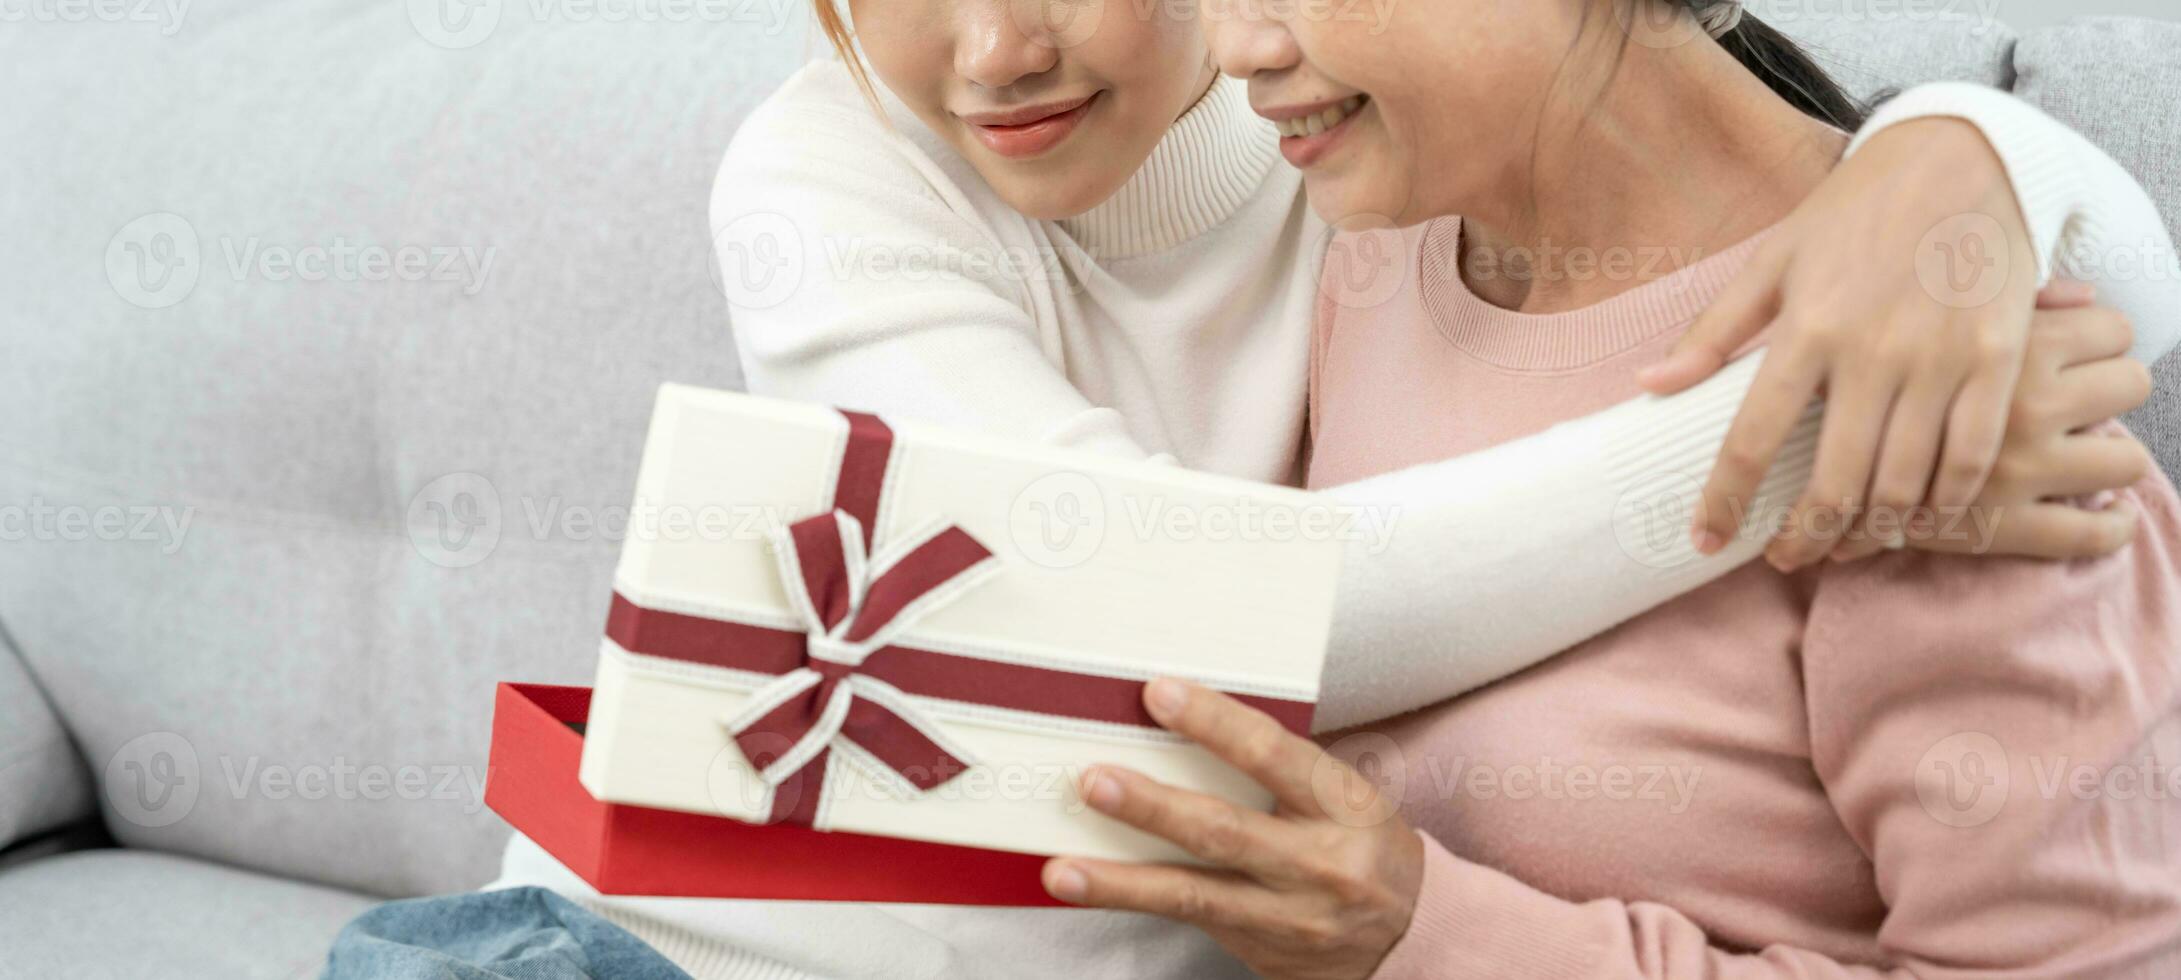 madre giorno, carino asiatico adolescente ragazza dare regalo scatola per maturo mezzo età mamma. amore, bacio, cura, contento Sorridi godere famiglia volta. festeggiare speciale occasione, contento compleanno, contento nuovo anni, allegro Natale foto